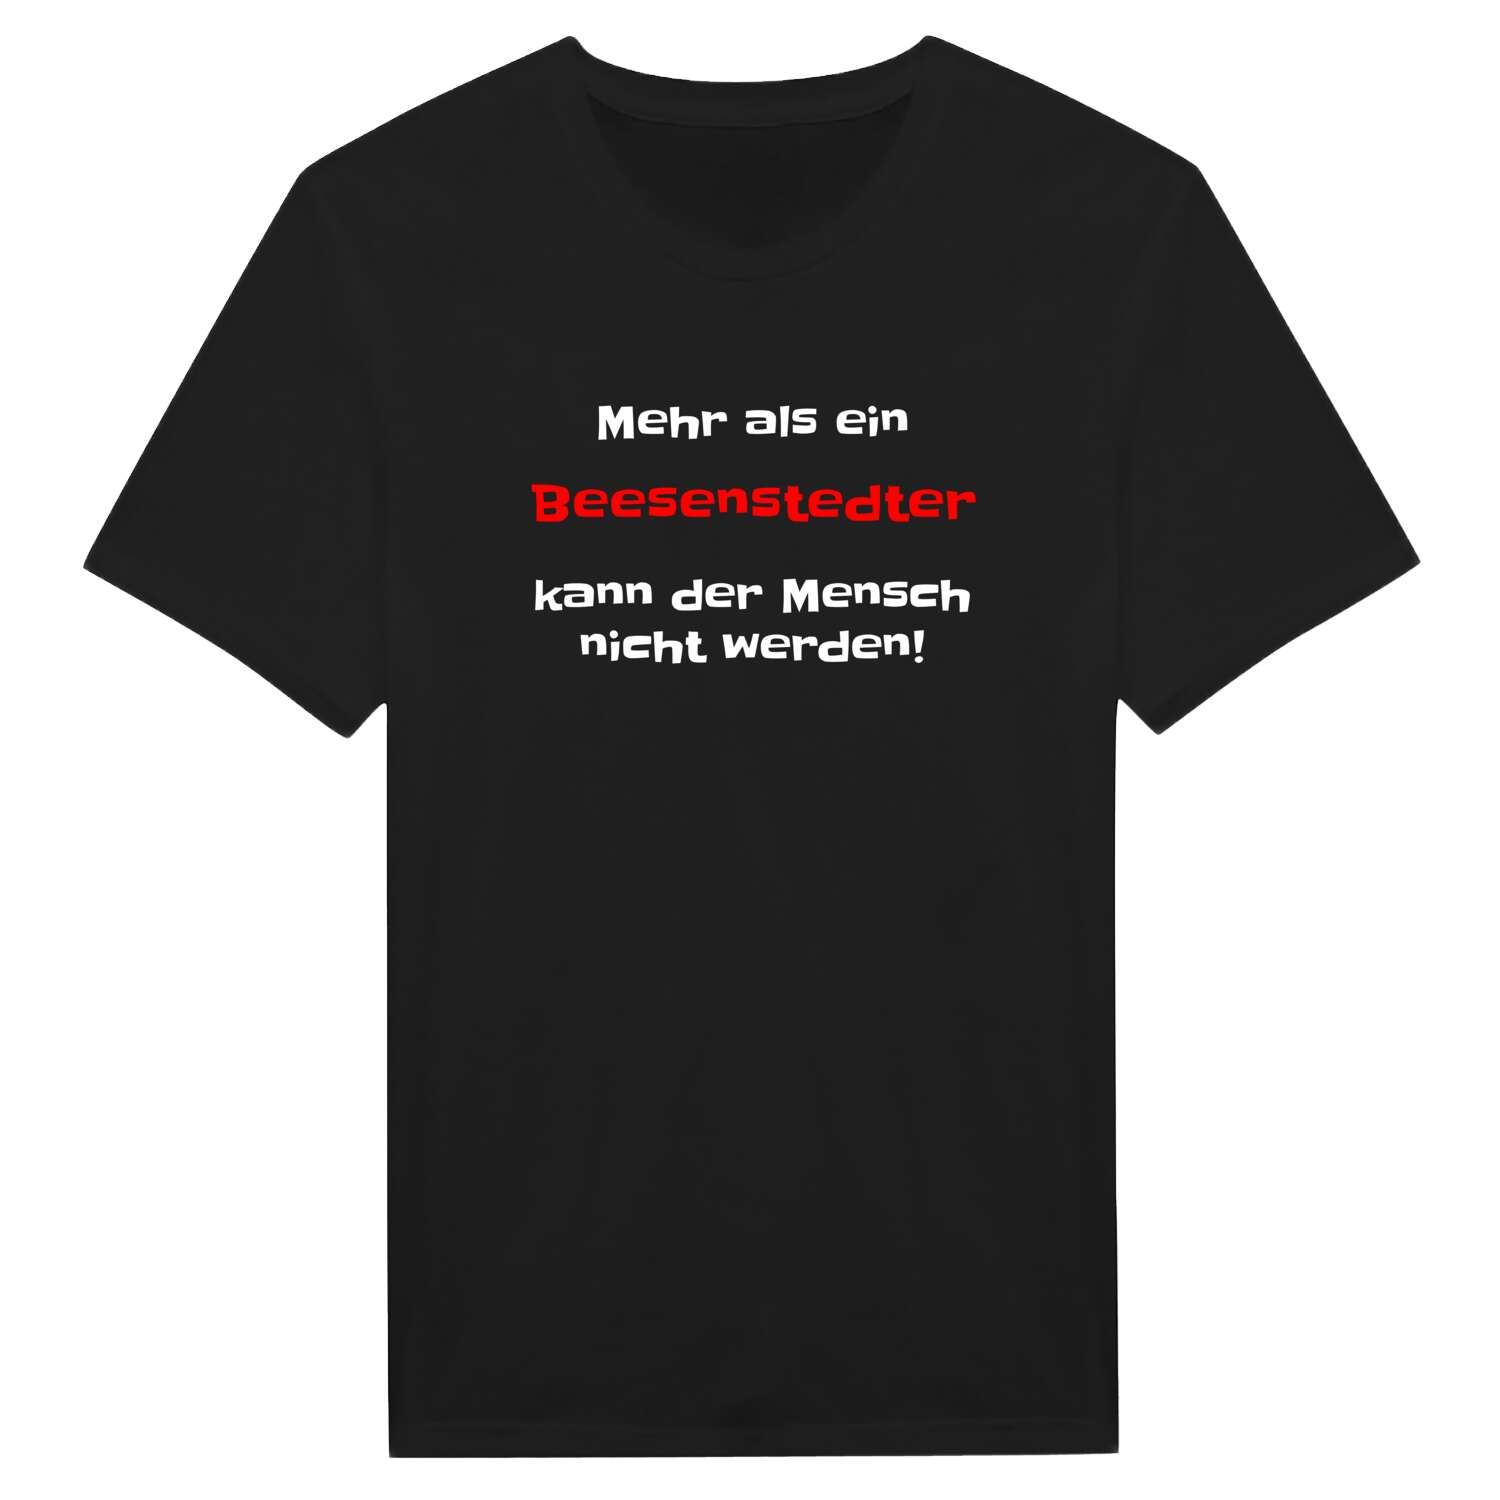 Beesenstedt T-Shirt »Mehr als ein«